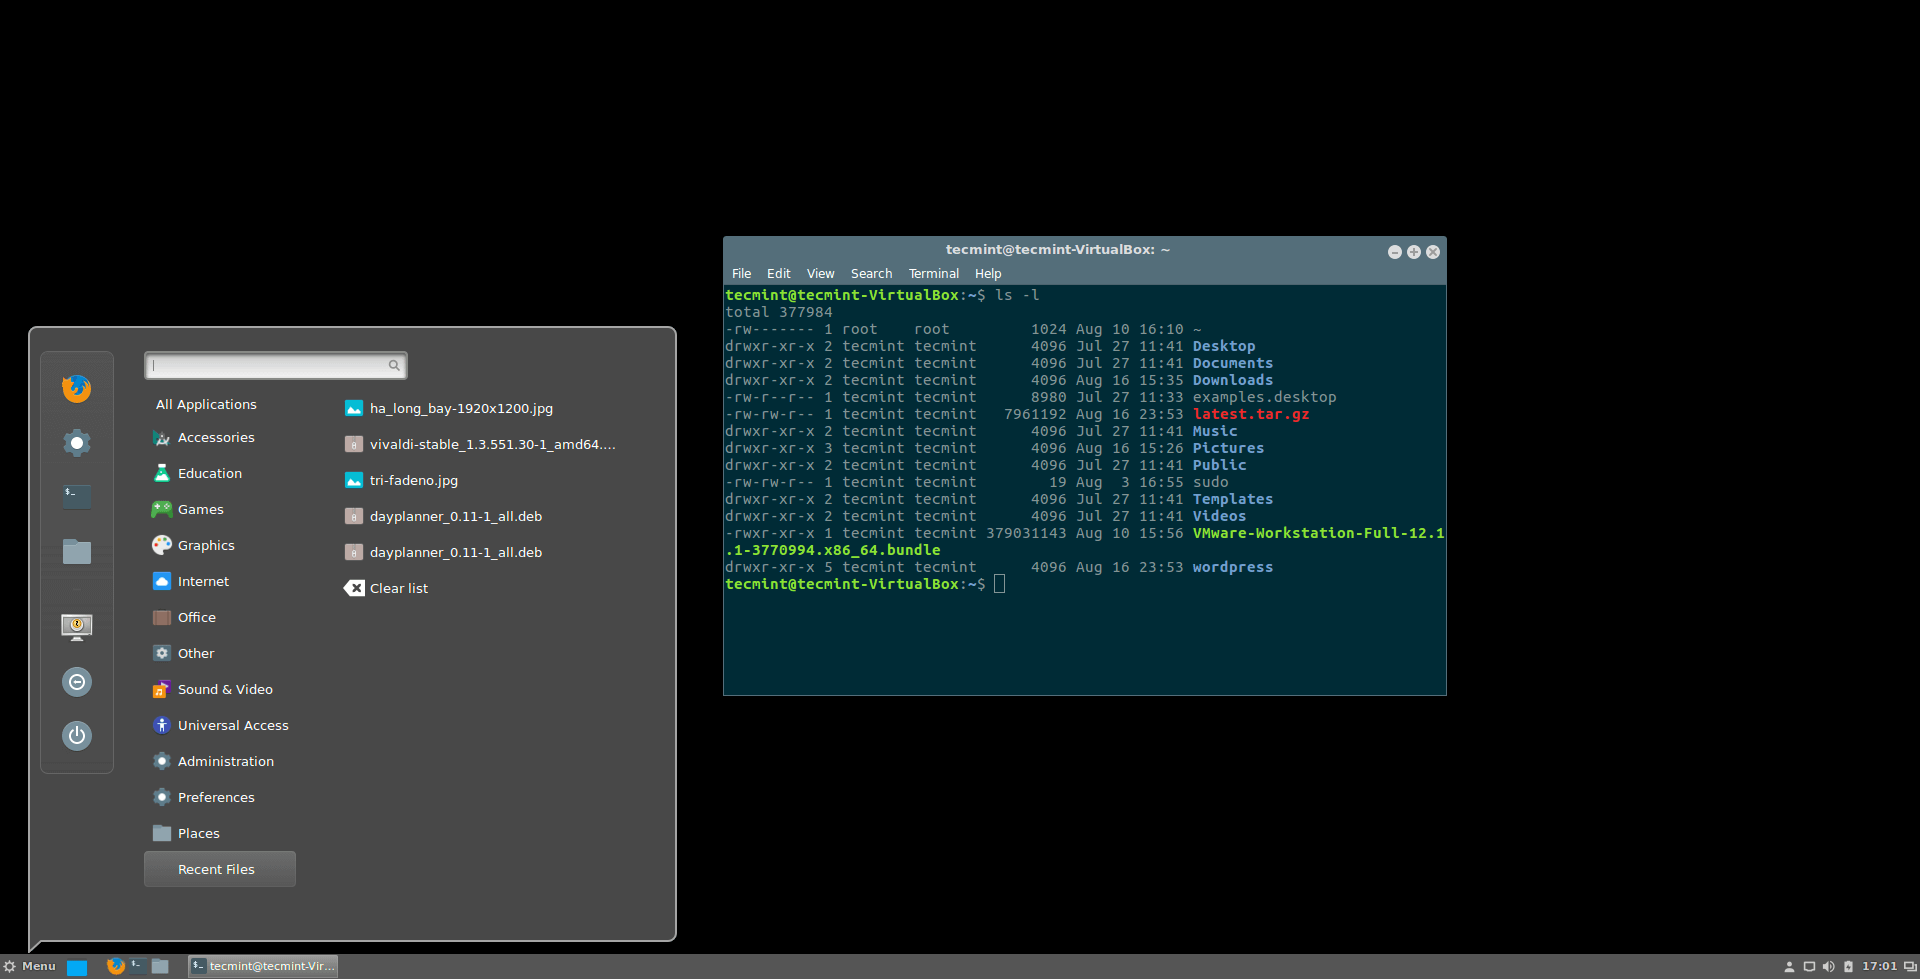  Cinnamon Desktop en Ubuntu 16.04 